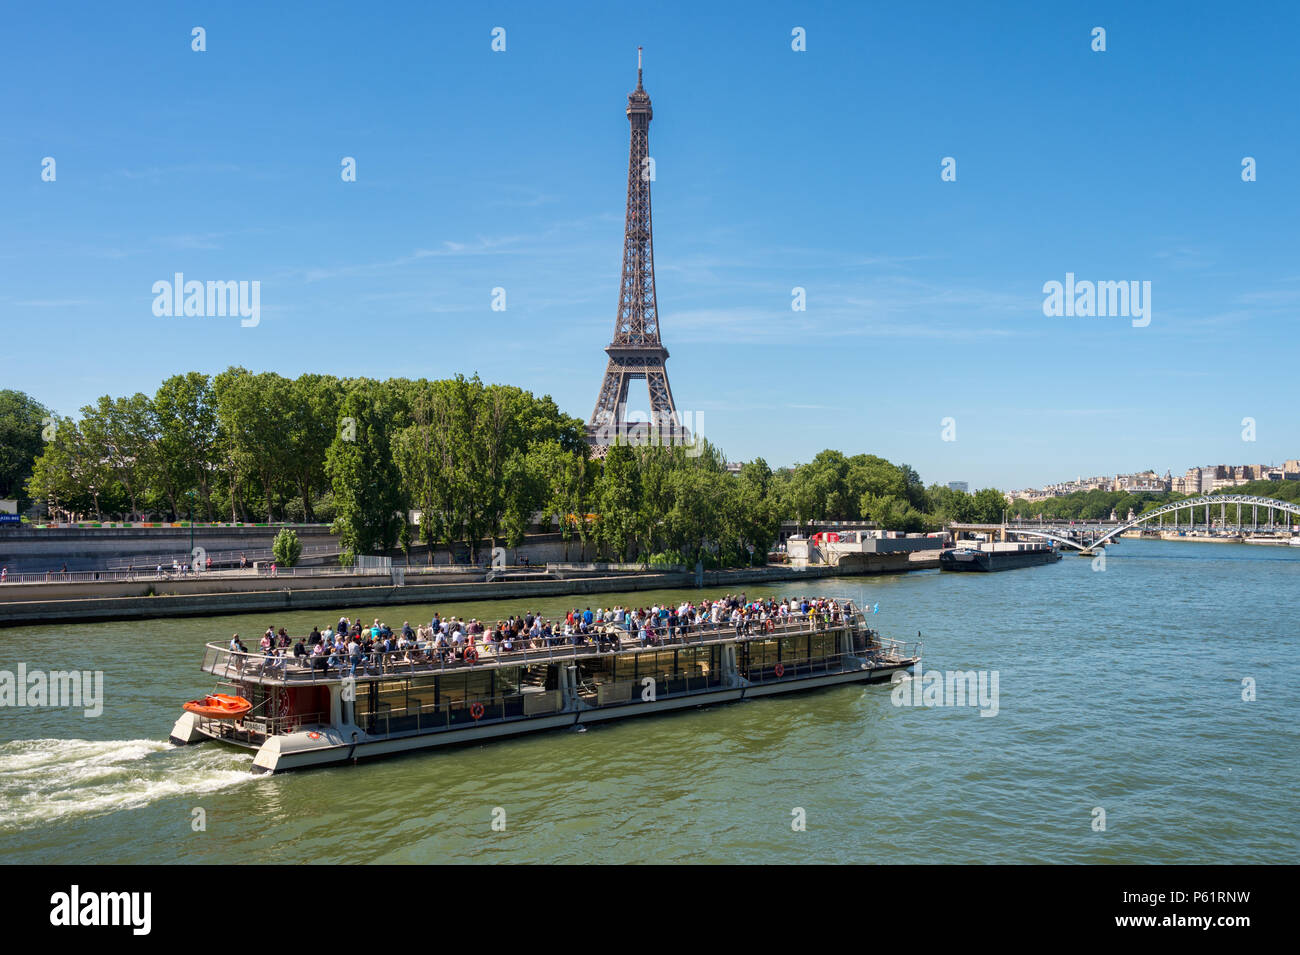 Paris, France - 23 juin 2018 : Bateau-mouche sur la Seine avec la Tour Eiffel en arrière-plan Banque D'Images